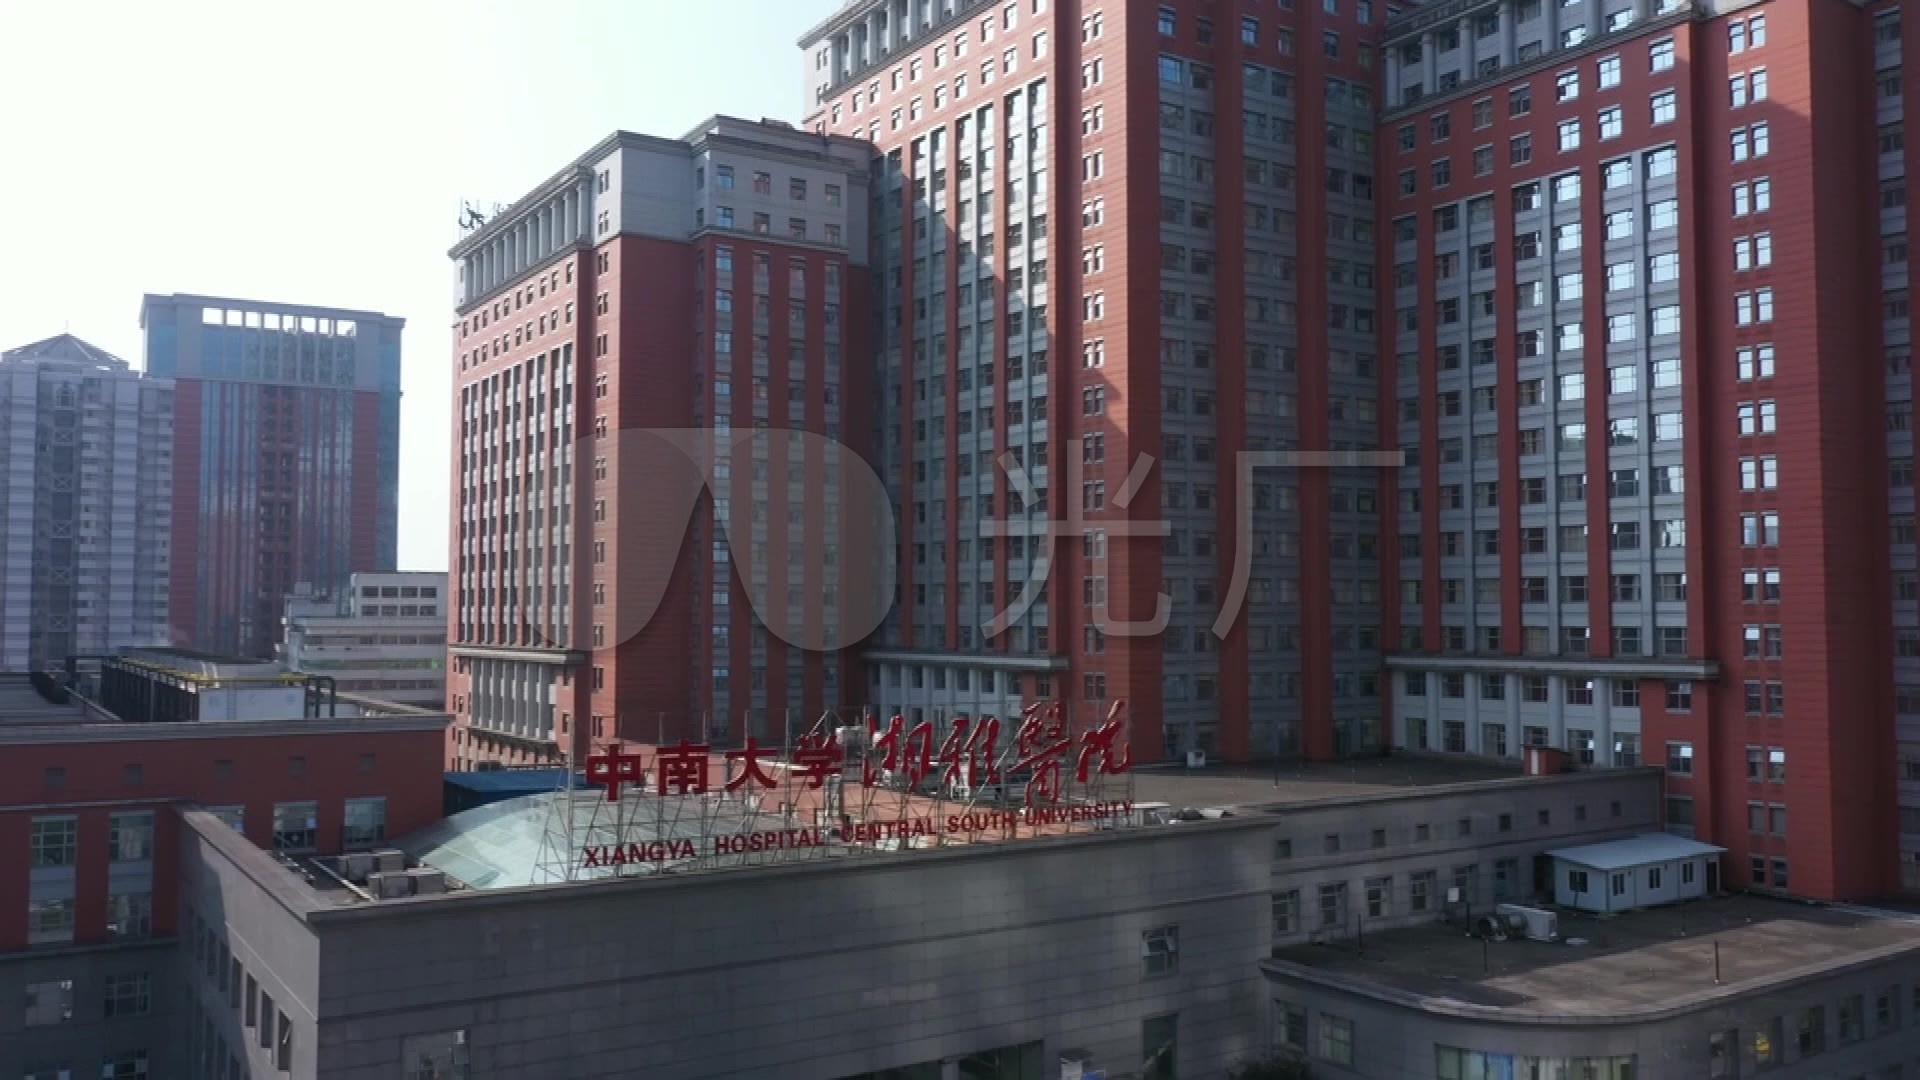 湘雅医院建筑红楼图片素材-编号29953287-图行天下